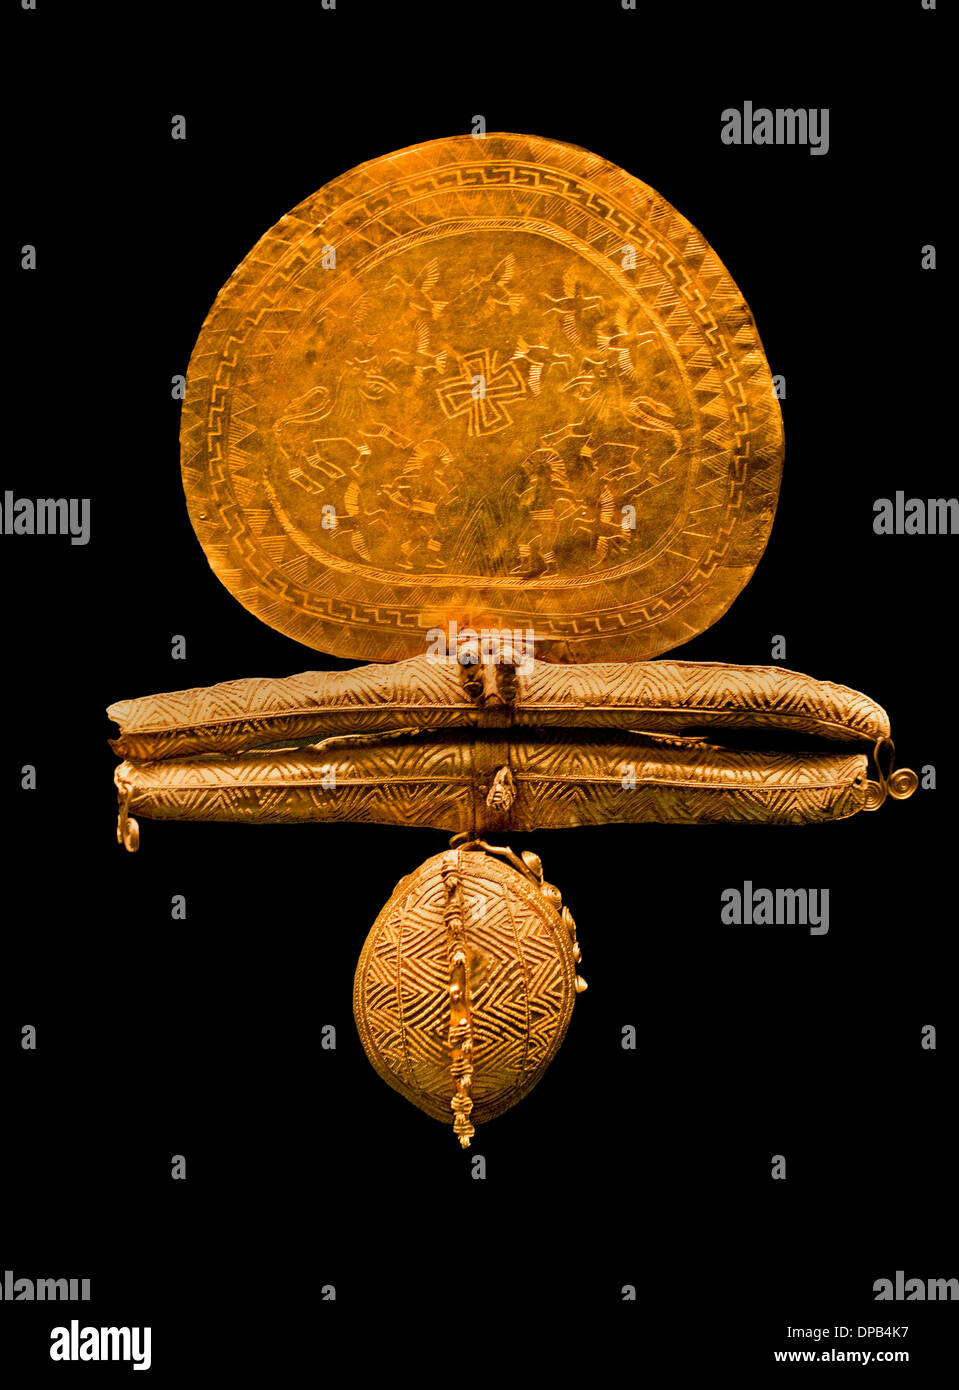 Magnifica spilla incisa gioielli - disco di guerrieri in un duello Lions e uccelli etrusca gioielli in oro 7 secolo A.C. Etruria Italia Foto Stock